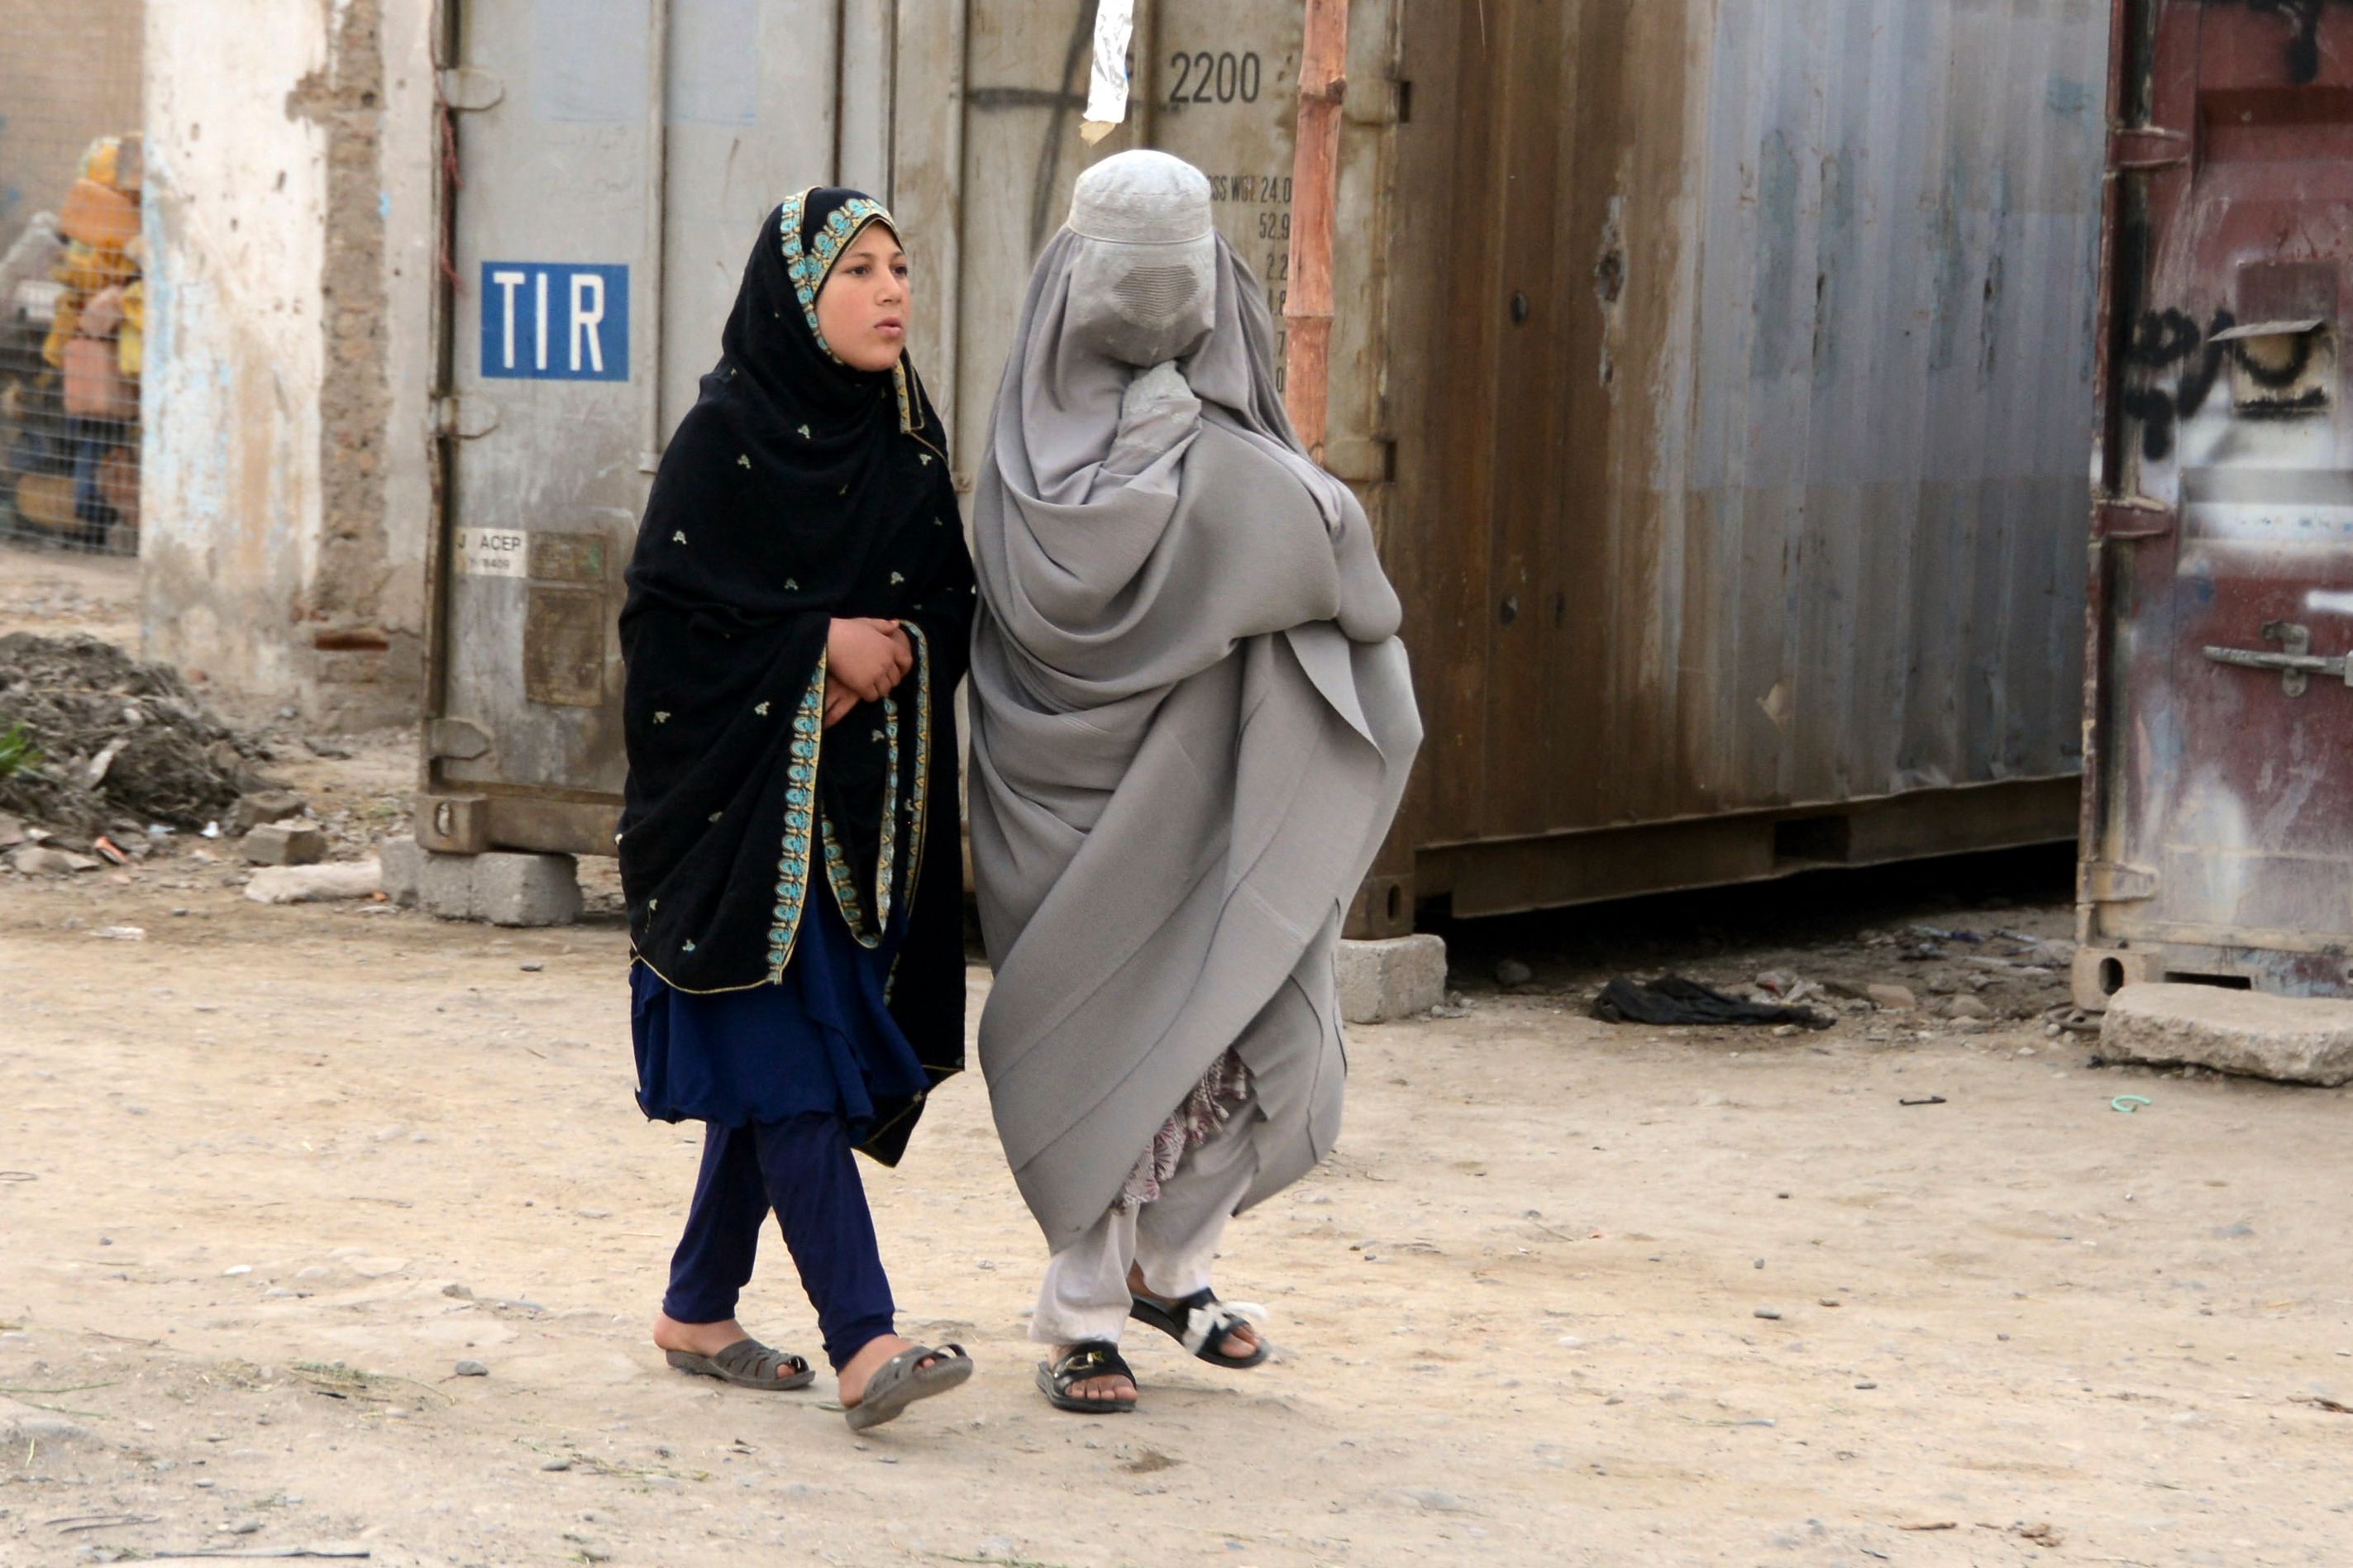 En burkakledd kvinne og et barn går på gata i Kandahar i Afghanistan.